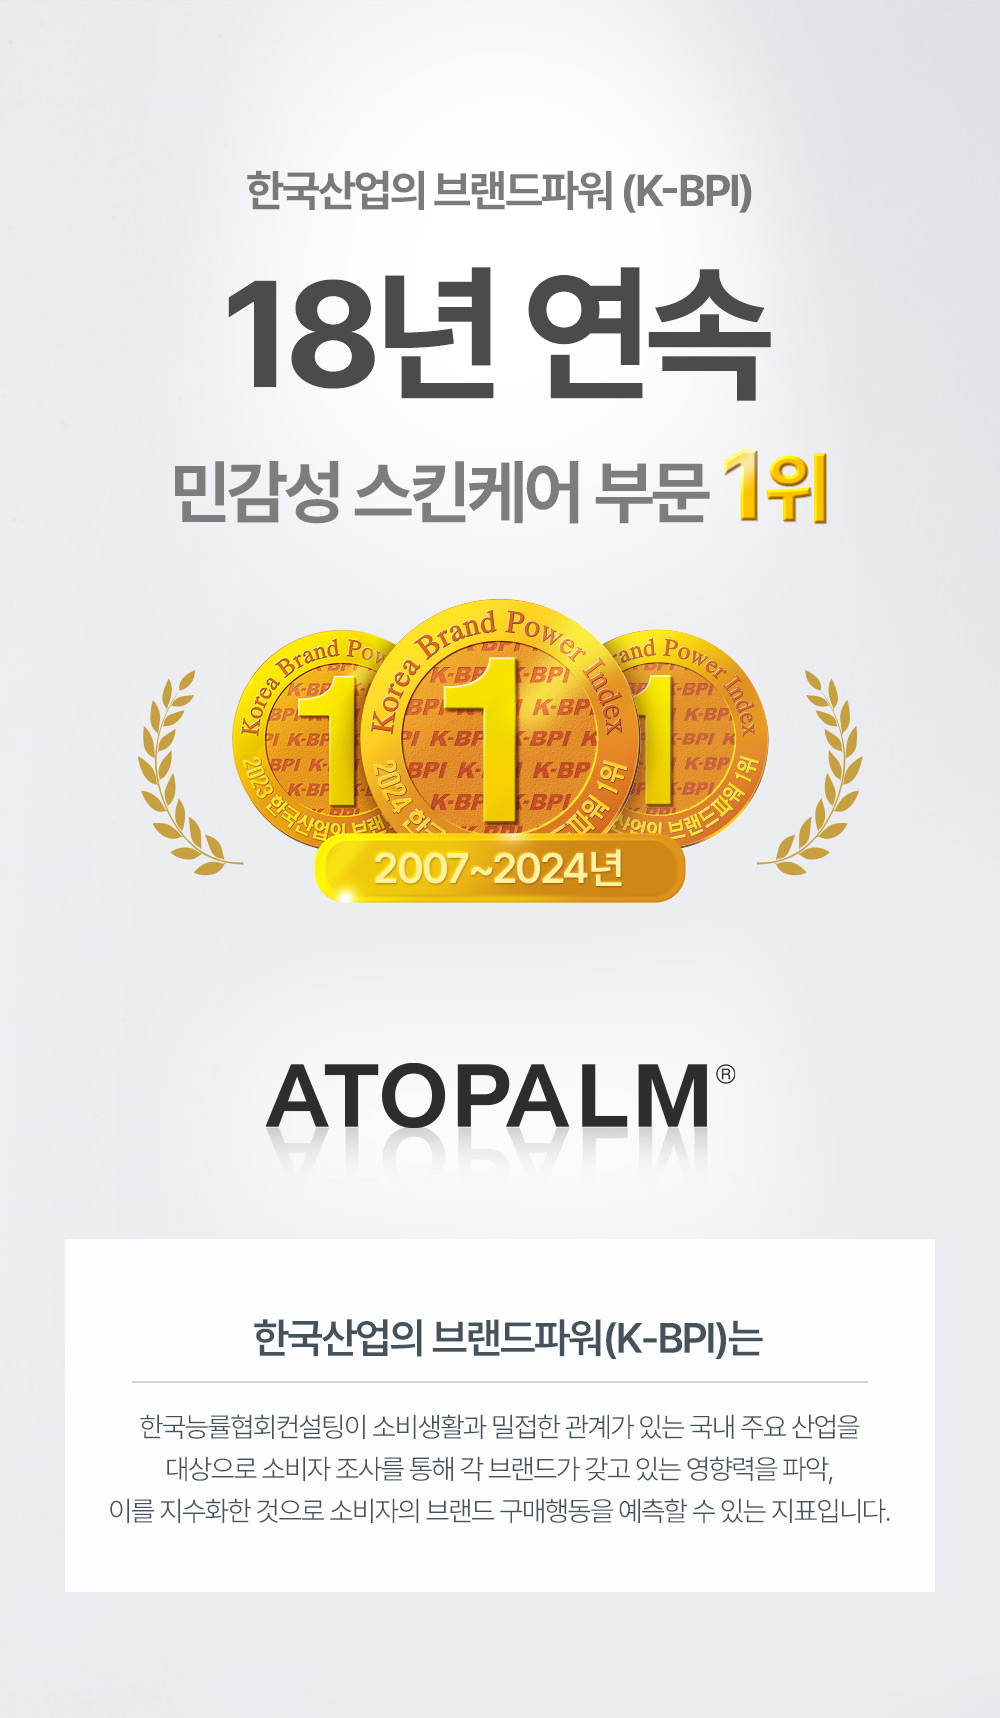 한국산업의 브랜드파워(K-bpi)17년 연속 민감성 스킨케어 부문 1위